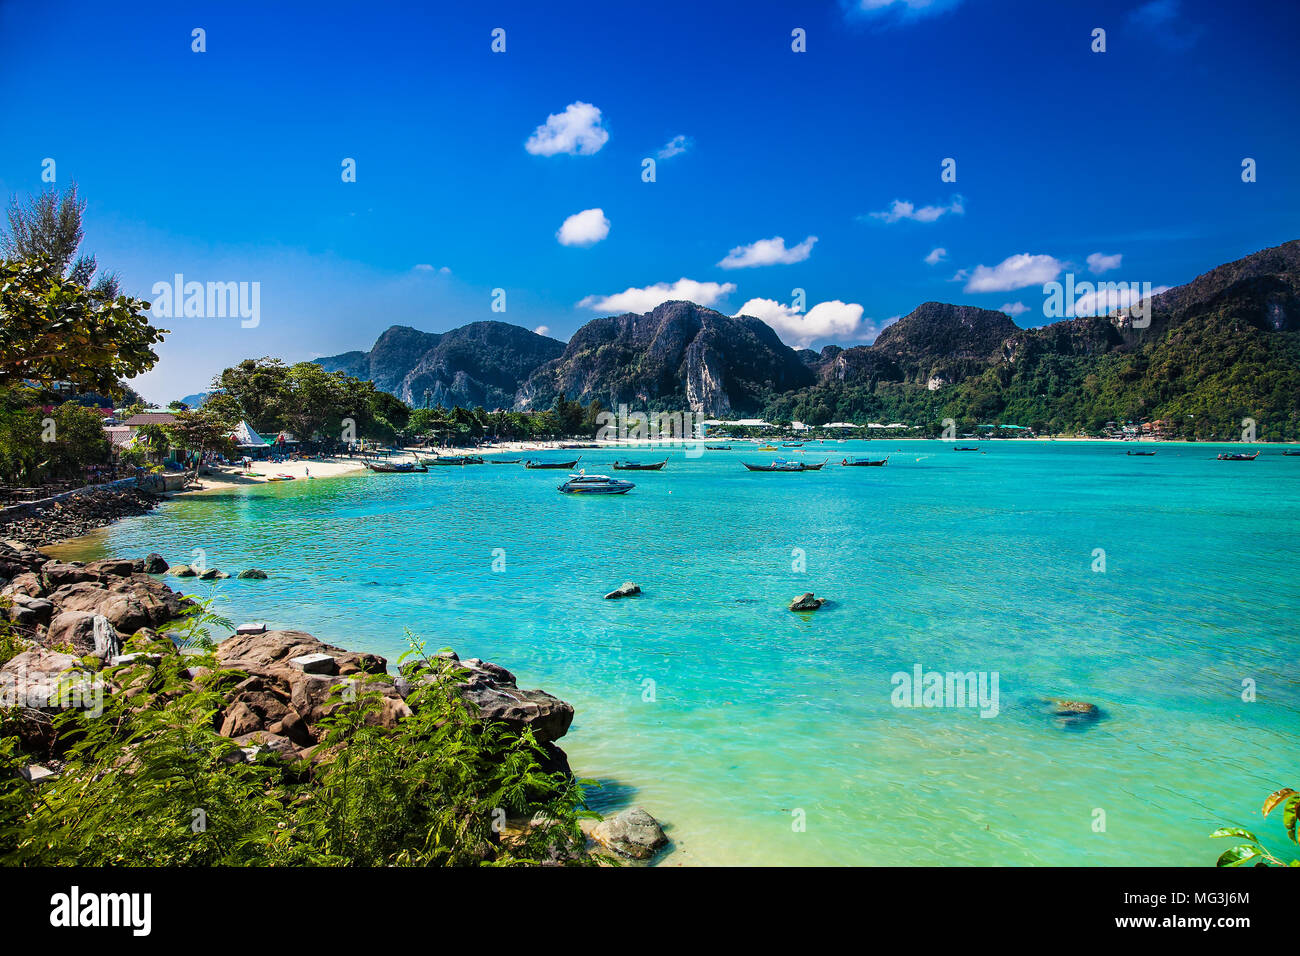 Panorama of tropical islands Phi Phi Don and Phi Phi Leh in sea. Crabi, Thailand Stock Photo